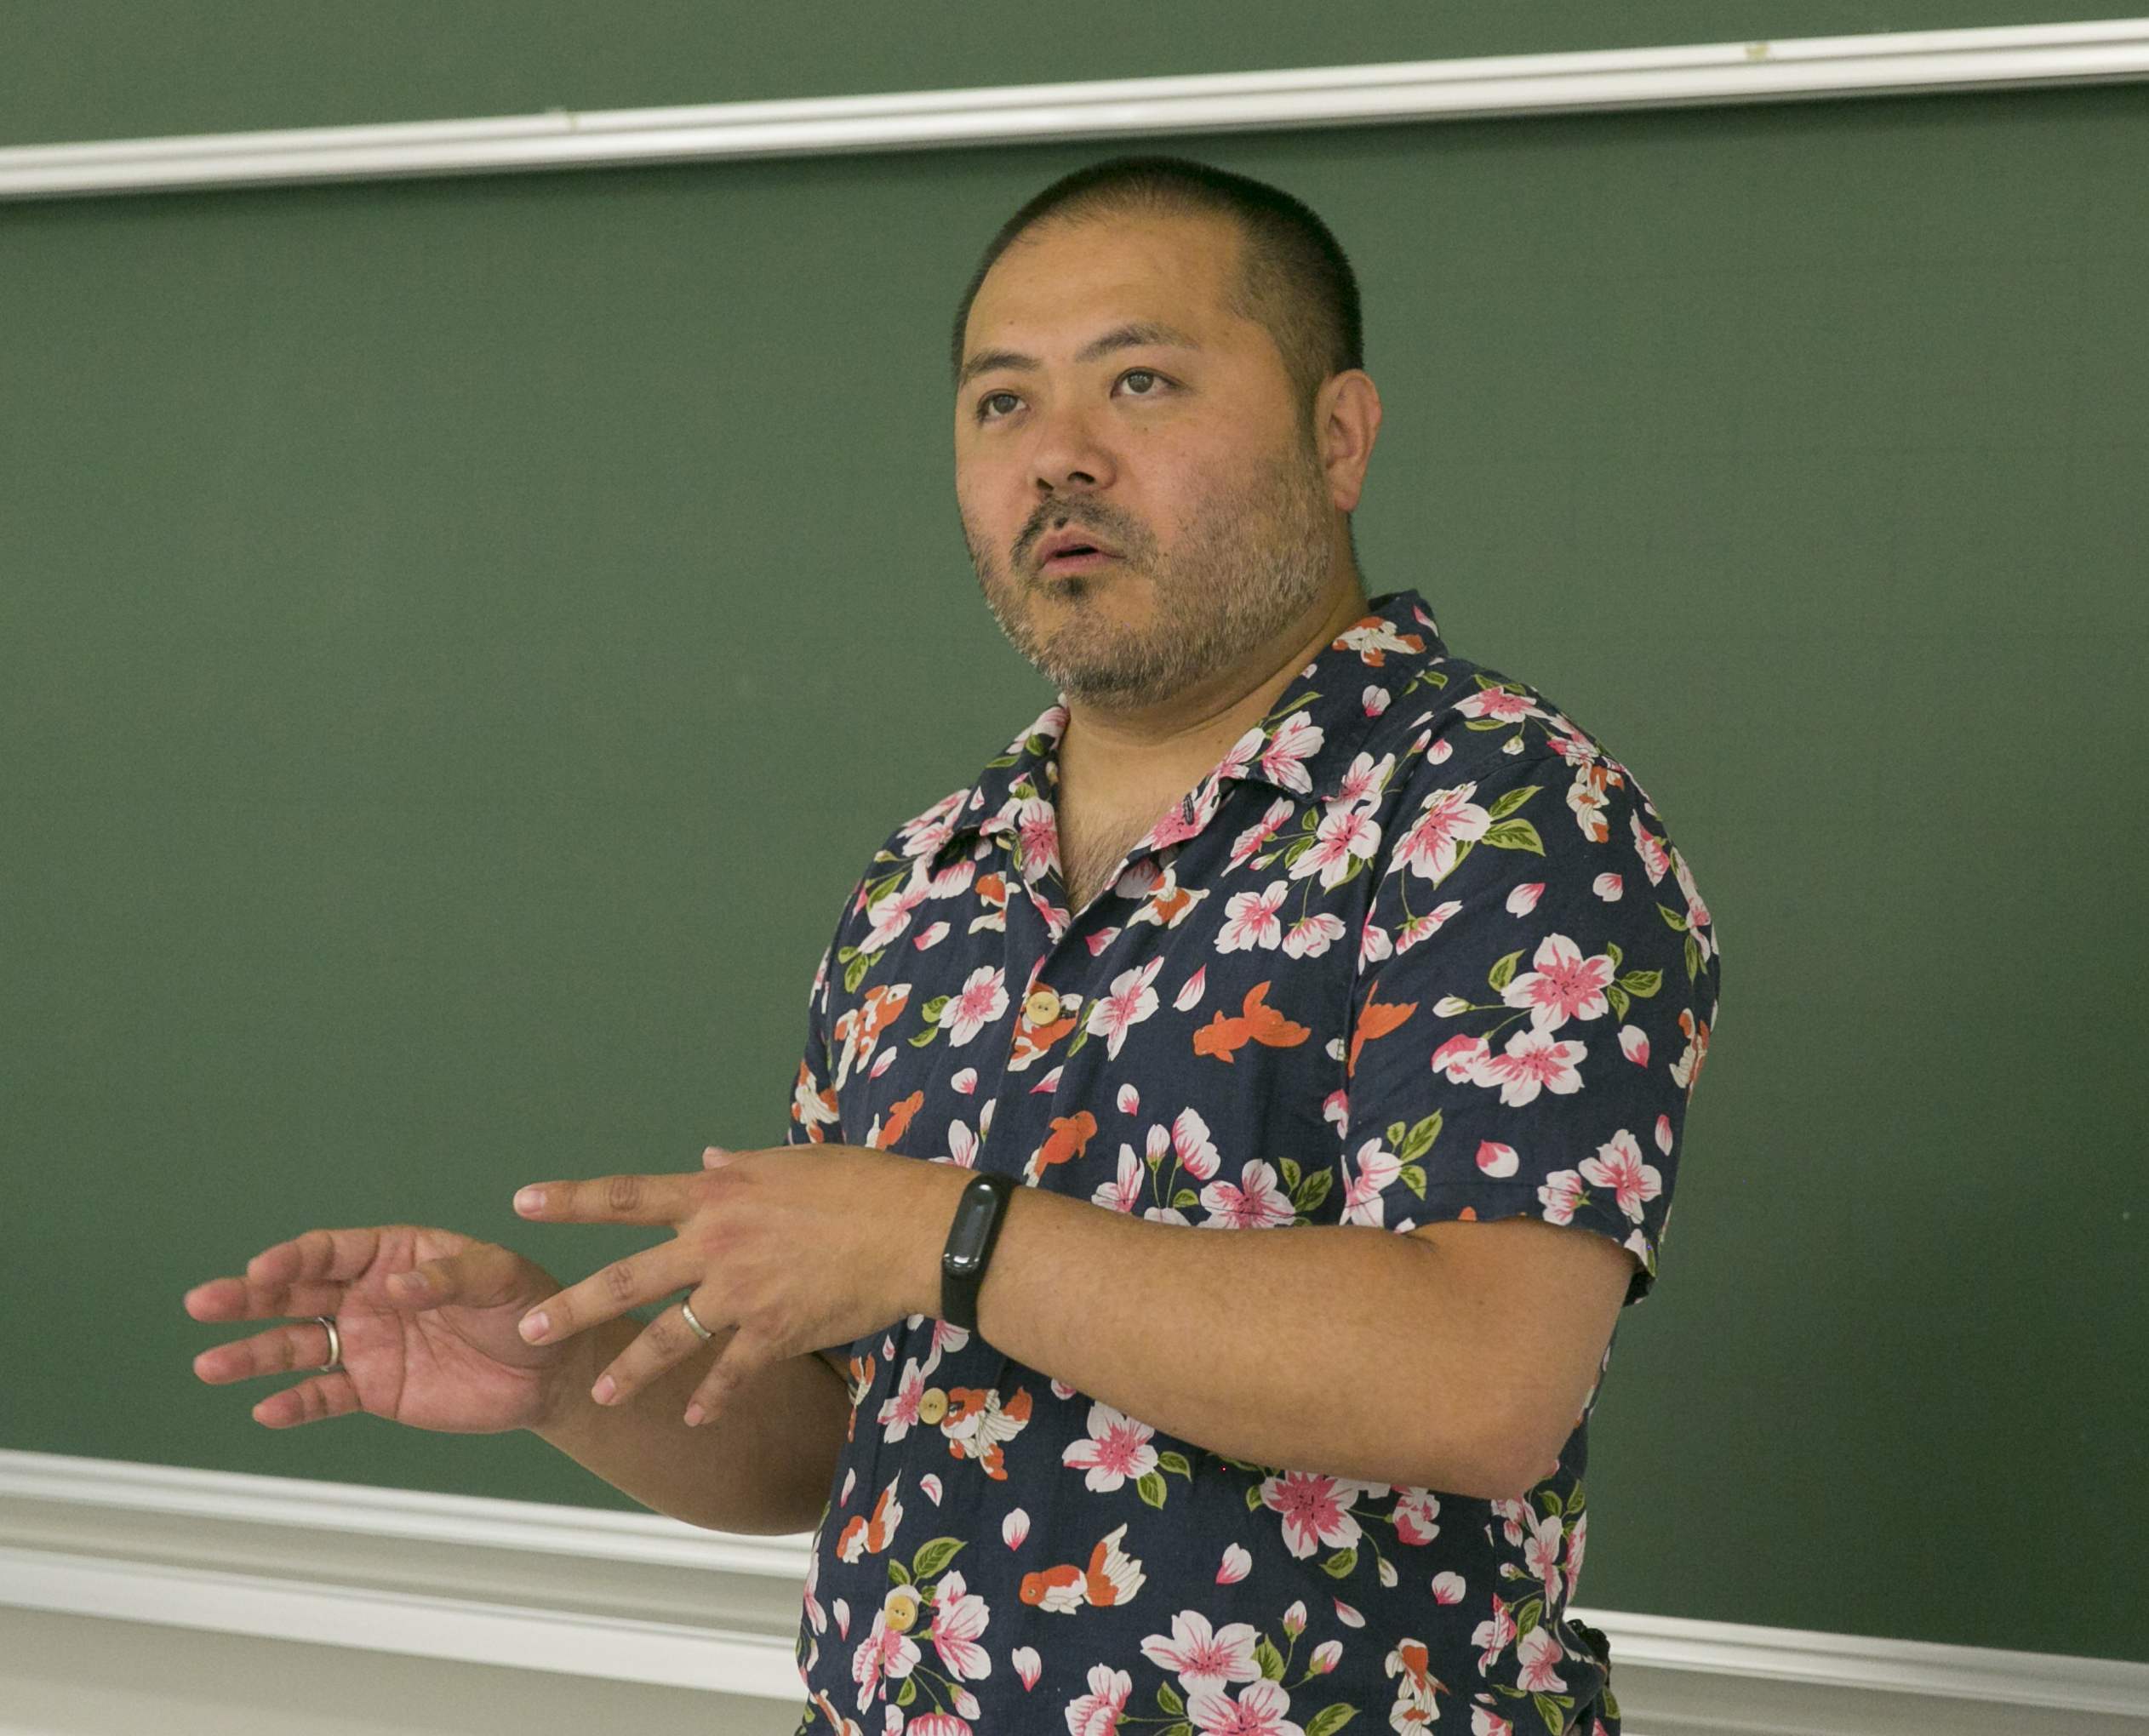 造形短期大学部の客員教授に就任したキャラクターデザイナー・谷口 亮氏が特別講義を開催